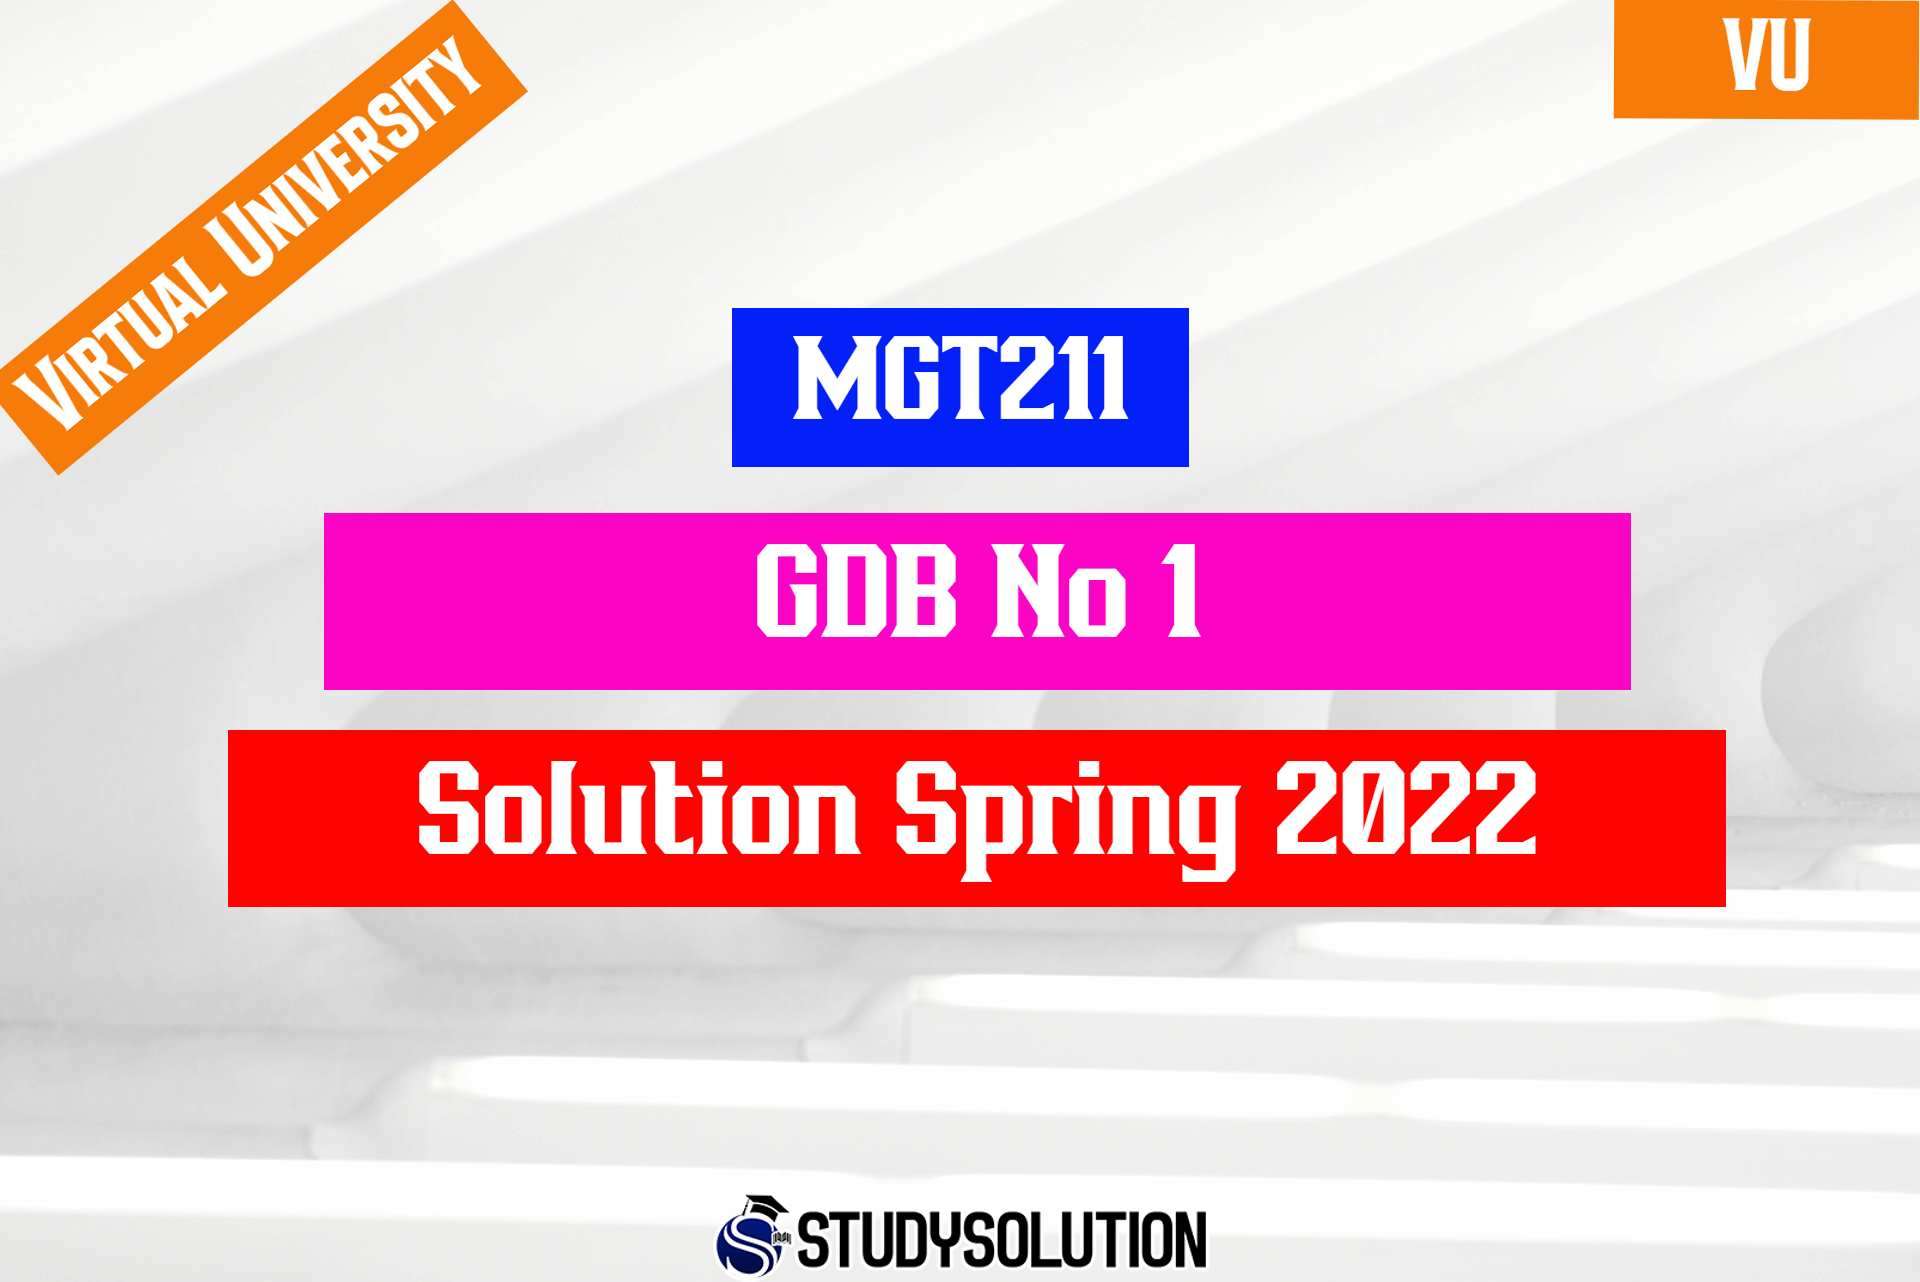 MGT211 GDB No 1 Solution Spring 2022